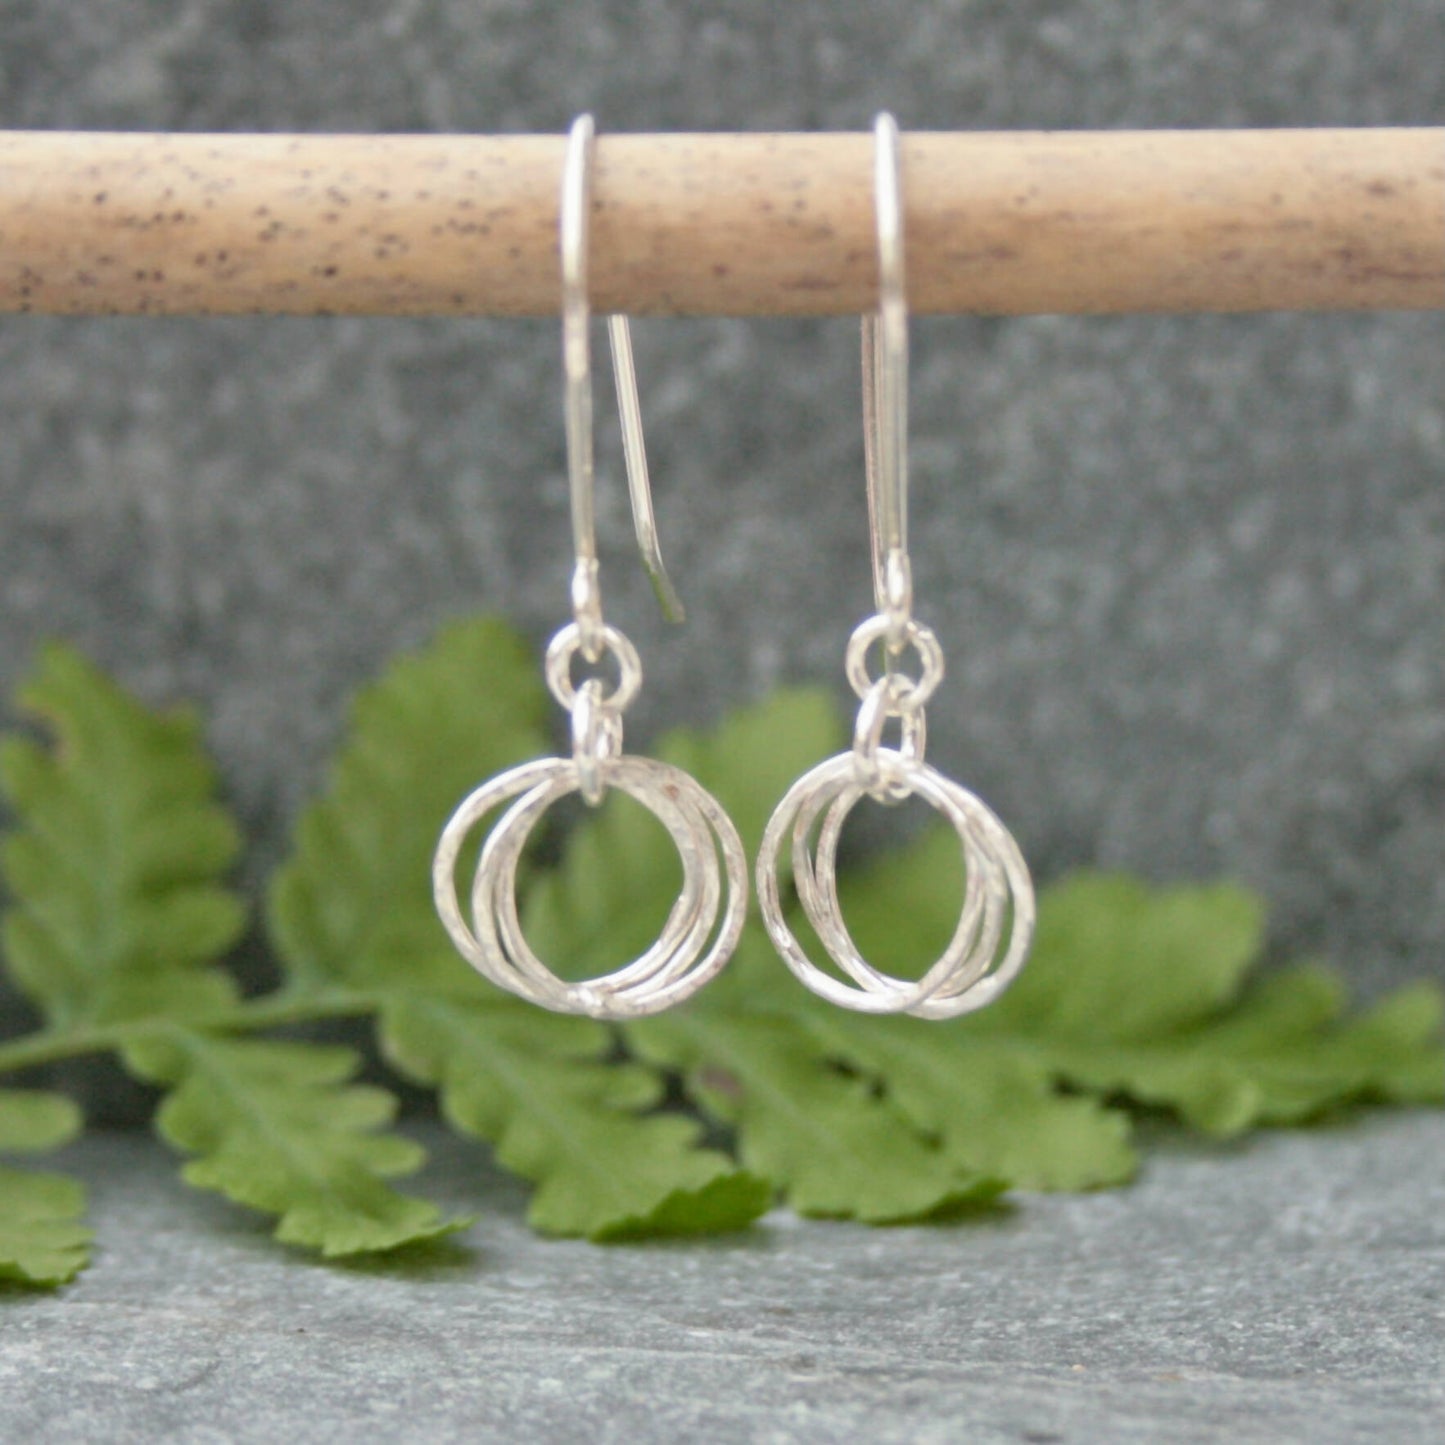 Silver interlinked hoop earrings